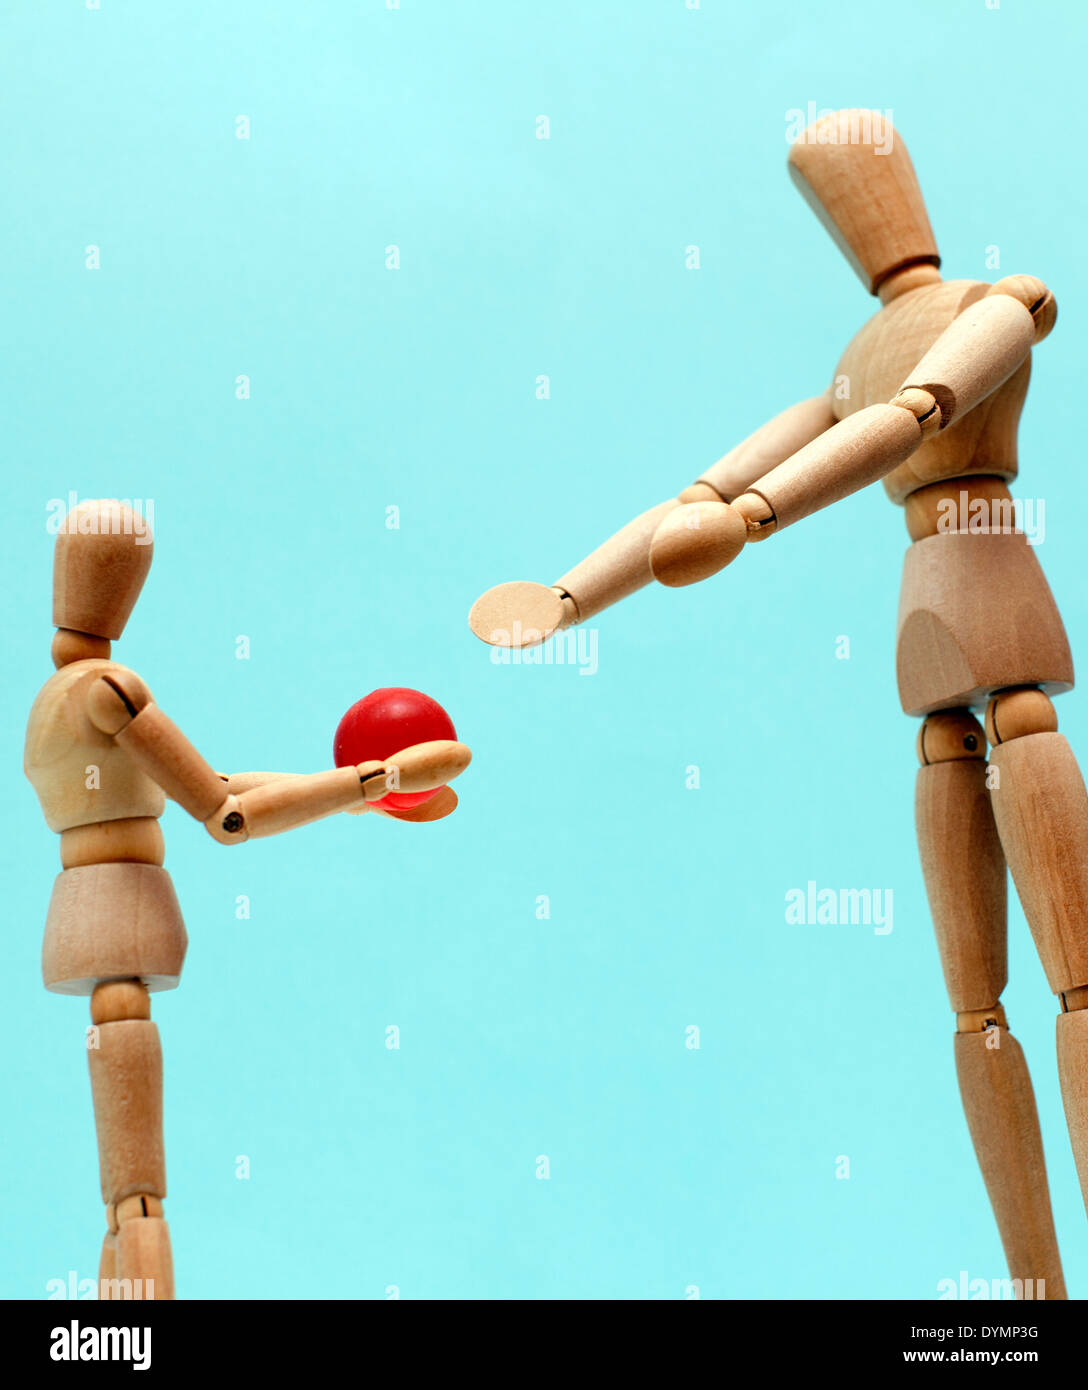 Genitore e bambino che gioca con la palla rappresentato da manichini in legno, Londra Foto Stock